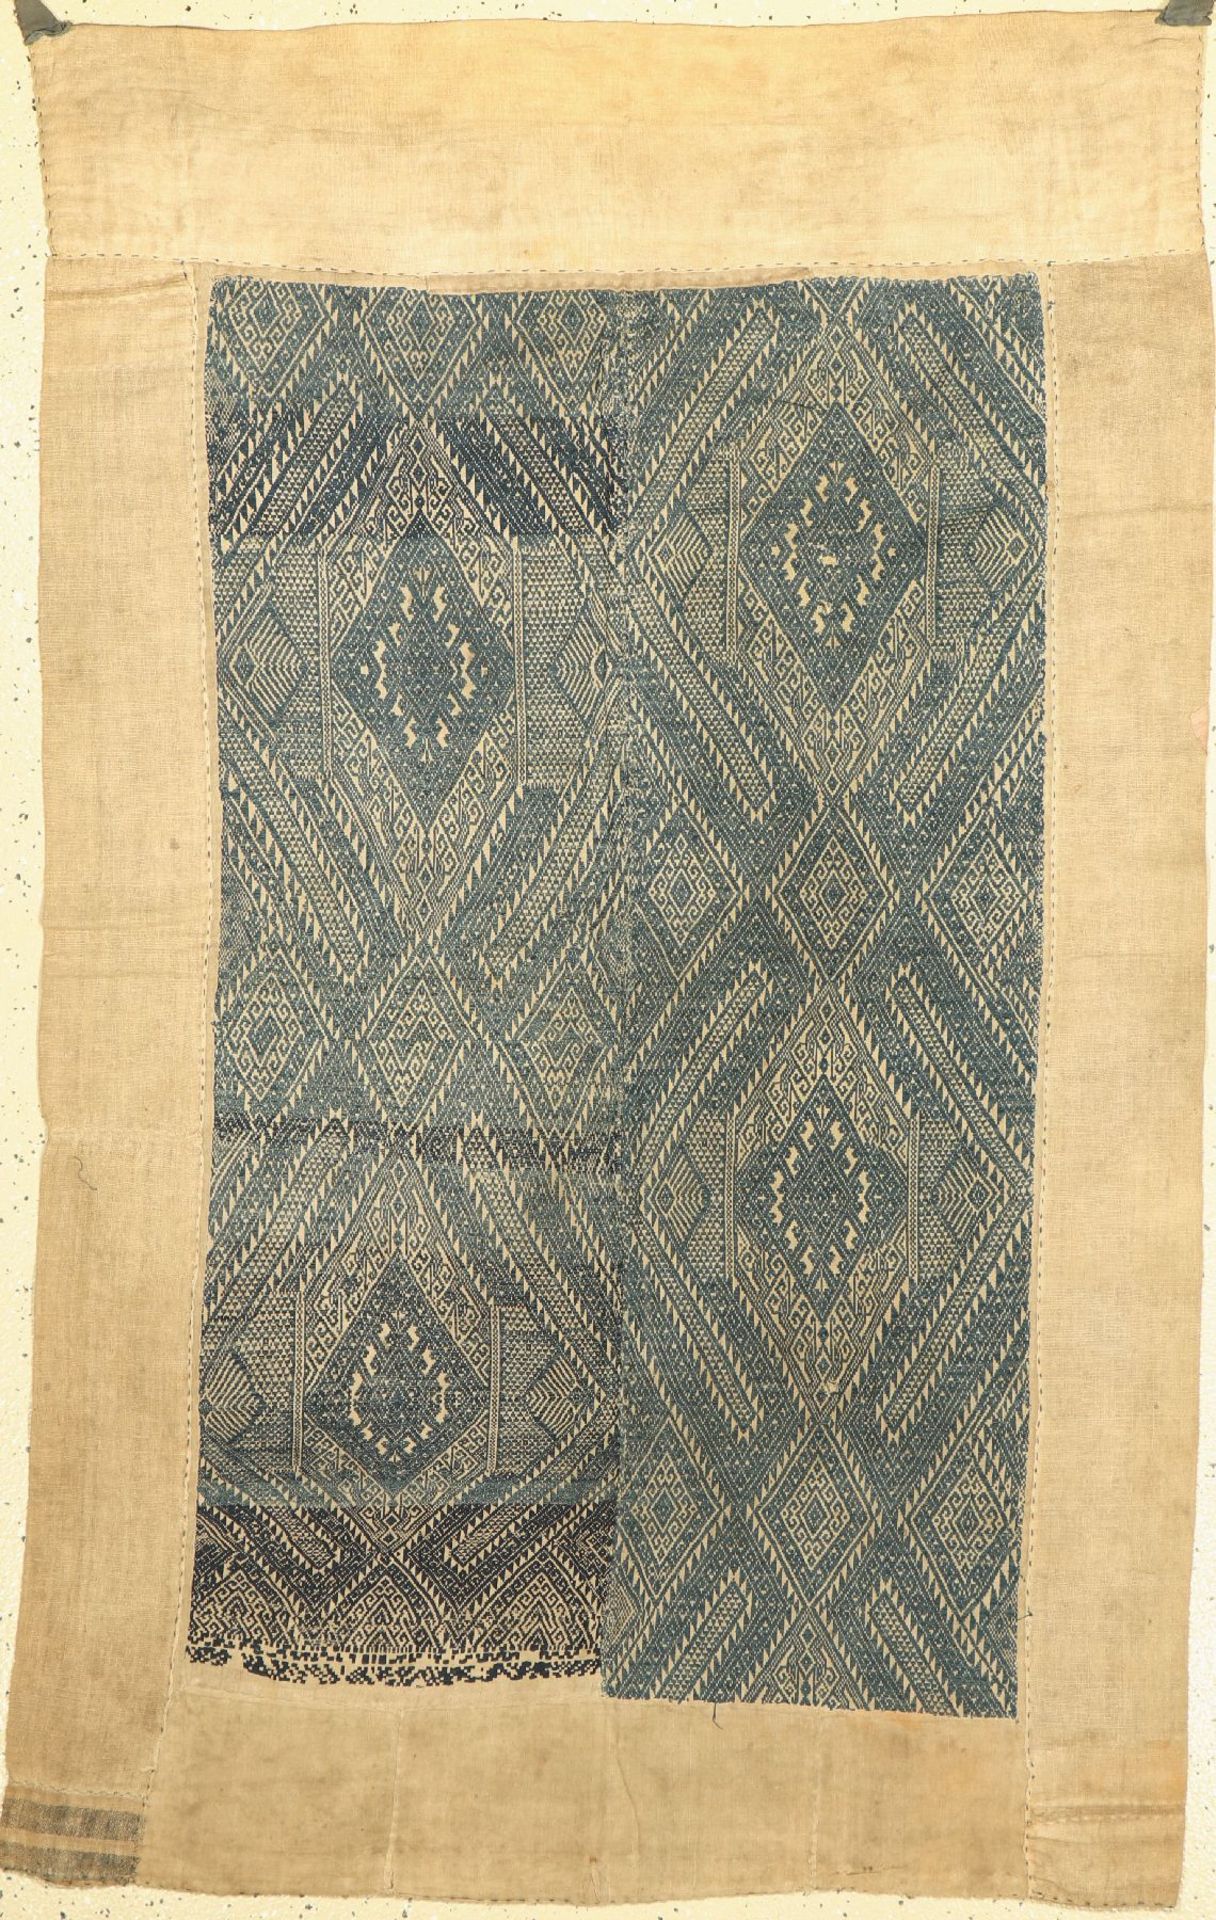 Traditionelle Decke,   Laos, um 1950, ca. 150x 100 cm,